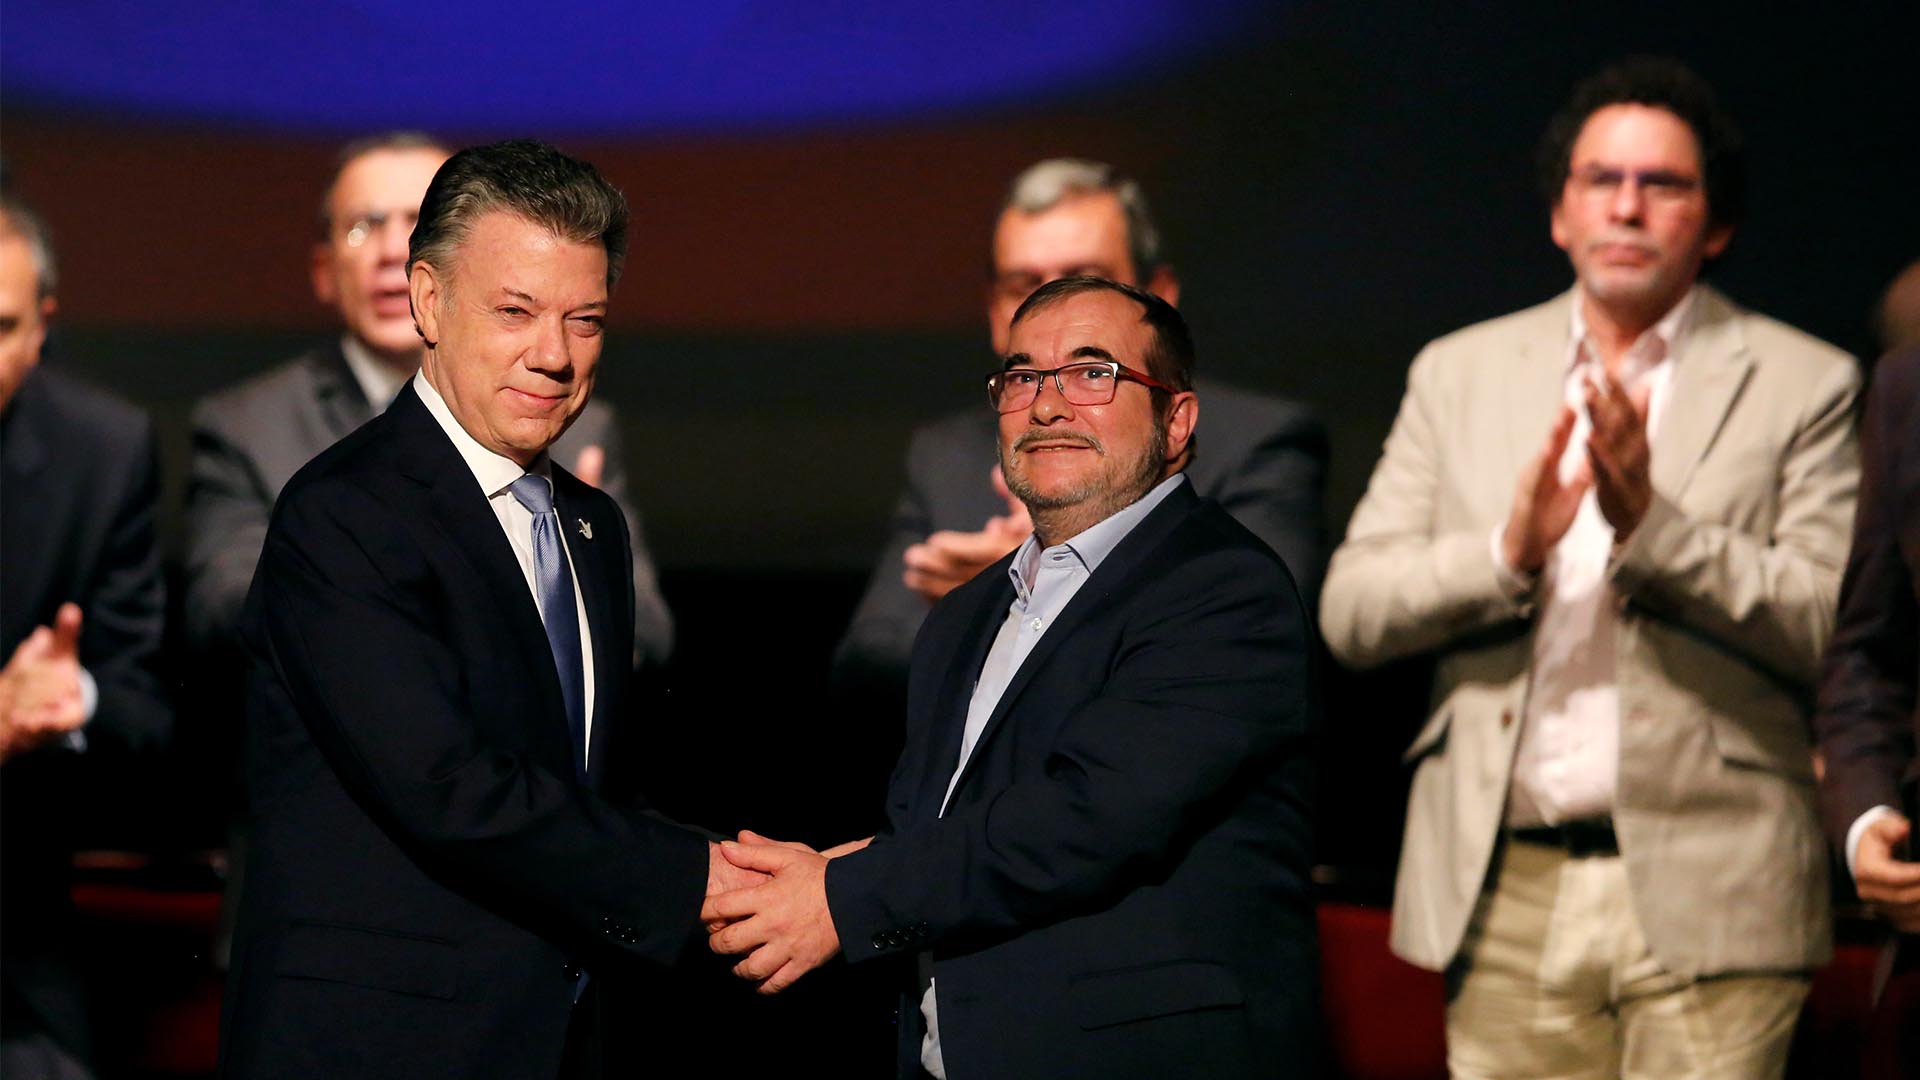 La tensión marca el primer aniversario del acuerdo de paz entre el Gobierno y las FARC